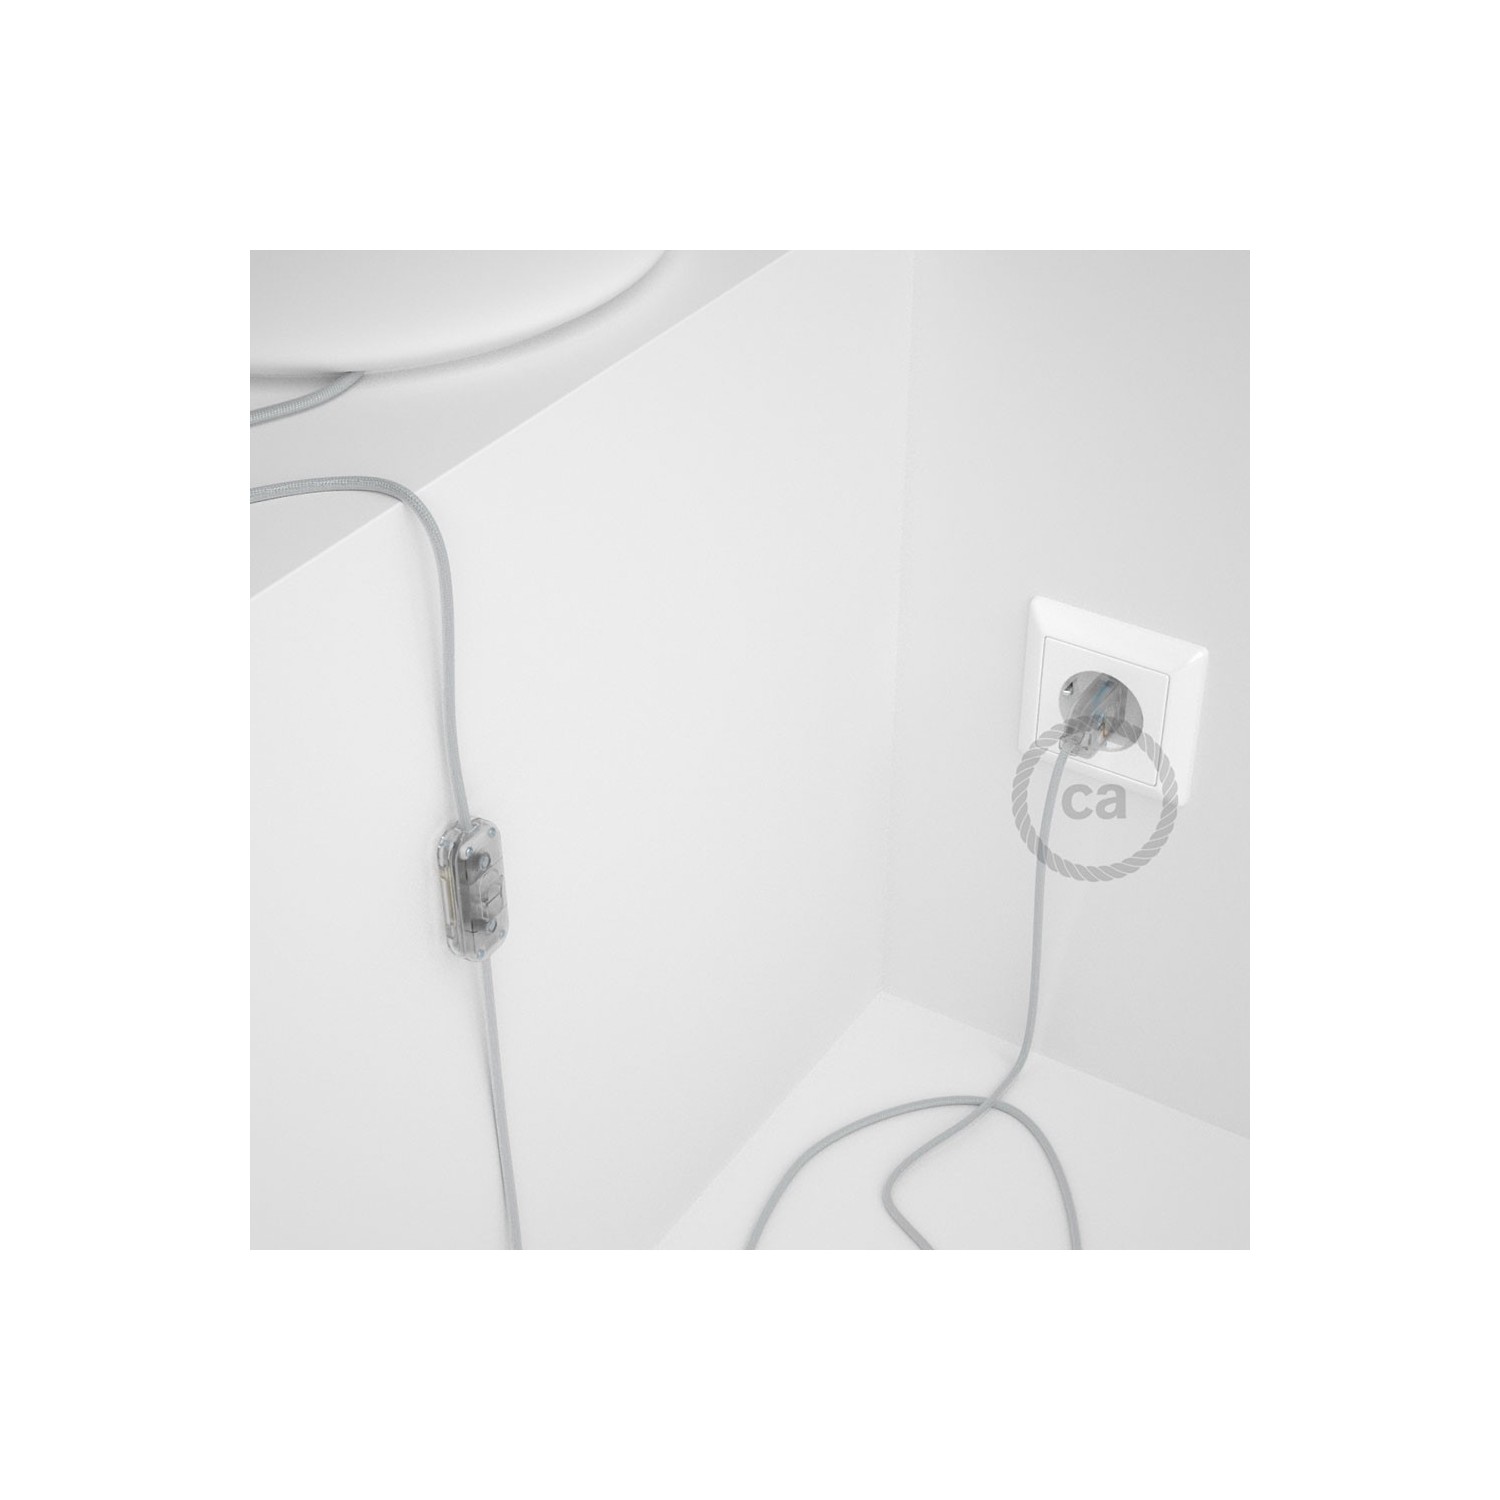 Cordon pour lampe, câble RM02 Effet Soie Argent 1,80 m. Choisissez la couleur de la fiche et de l'interrupteur!